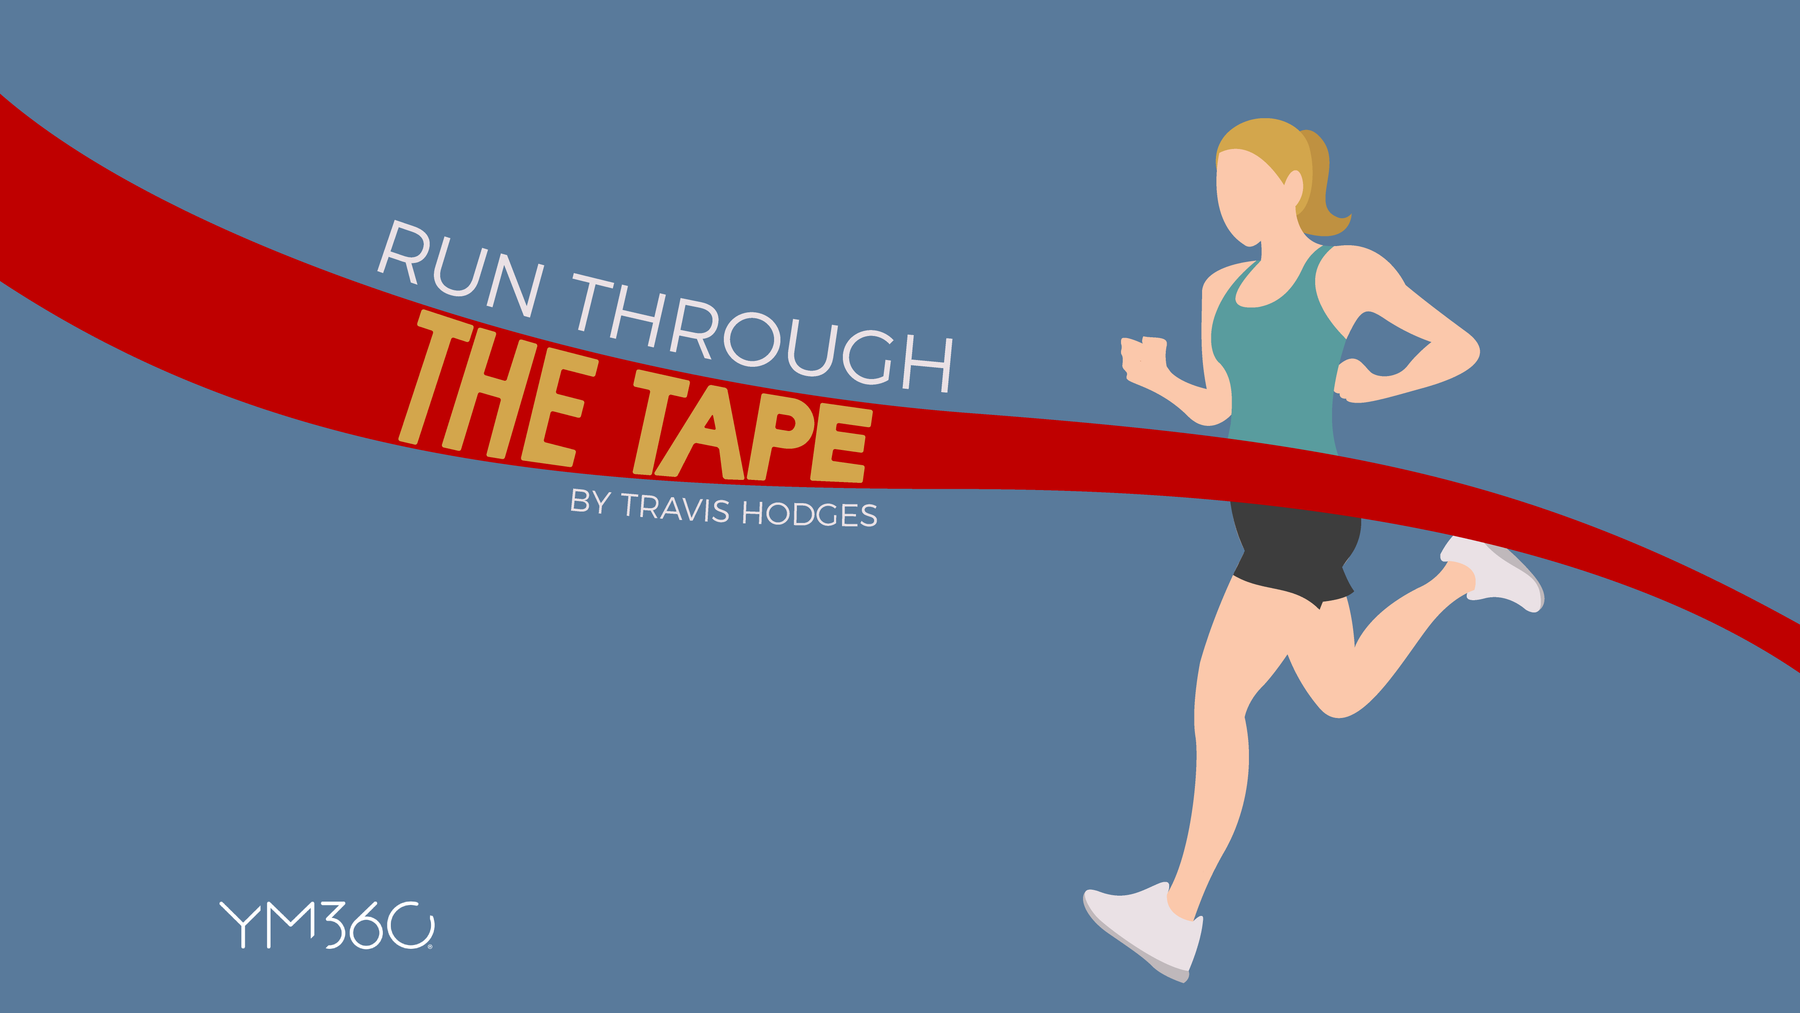 Run Through the Tape